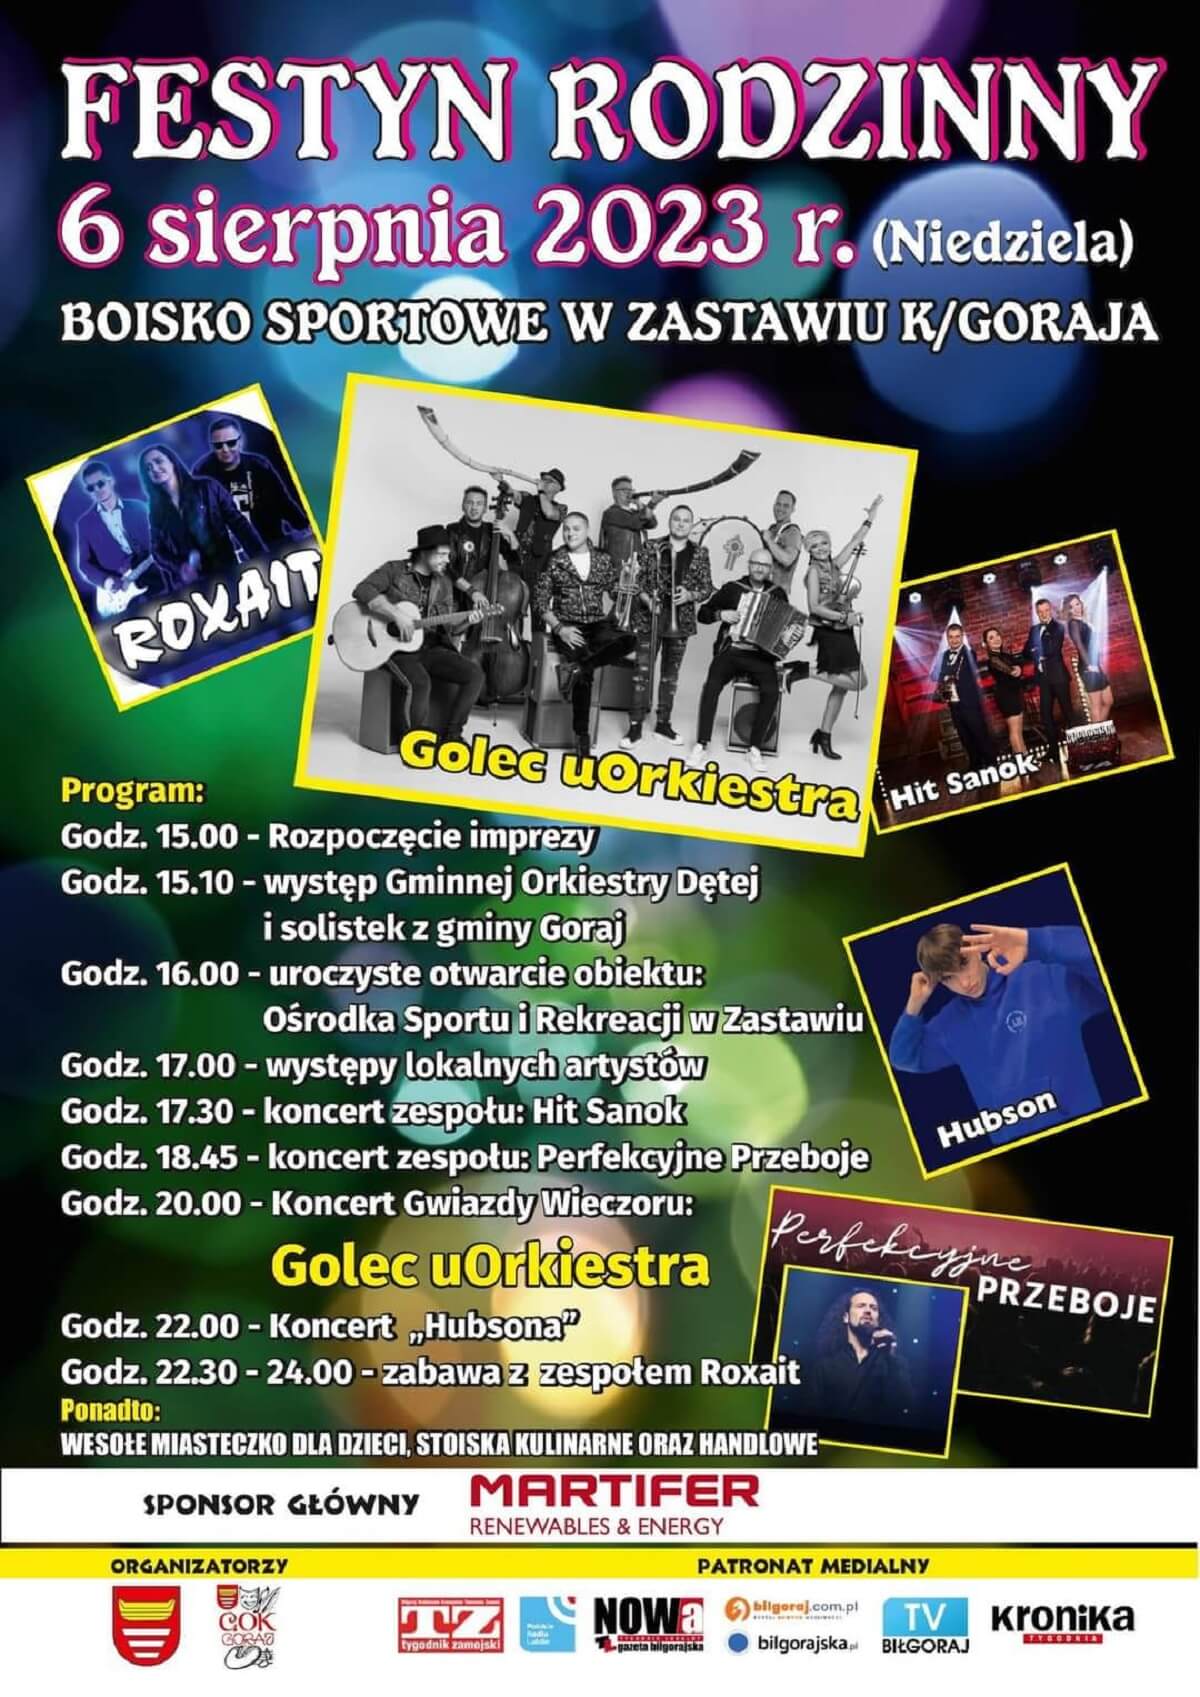 Festyn Rodzinny w Zastawiu koło Goraja 2023 - plakat, program wydarzeń